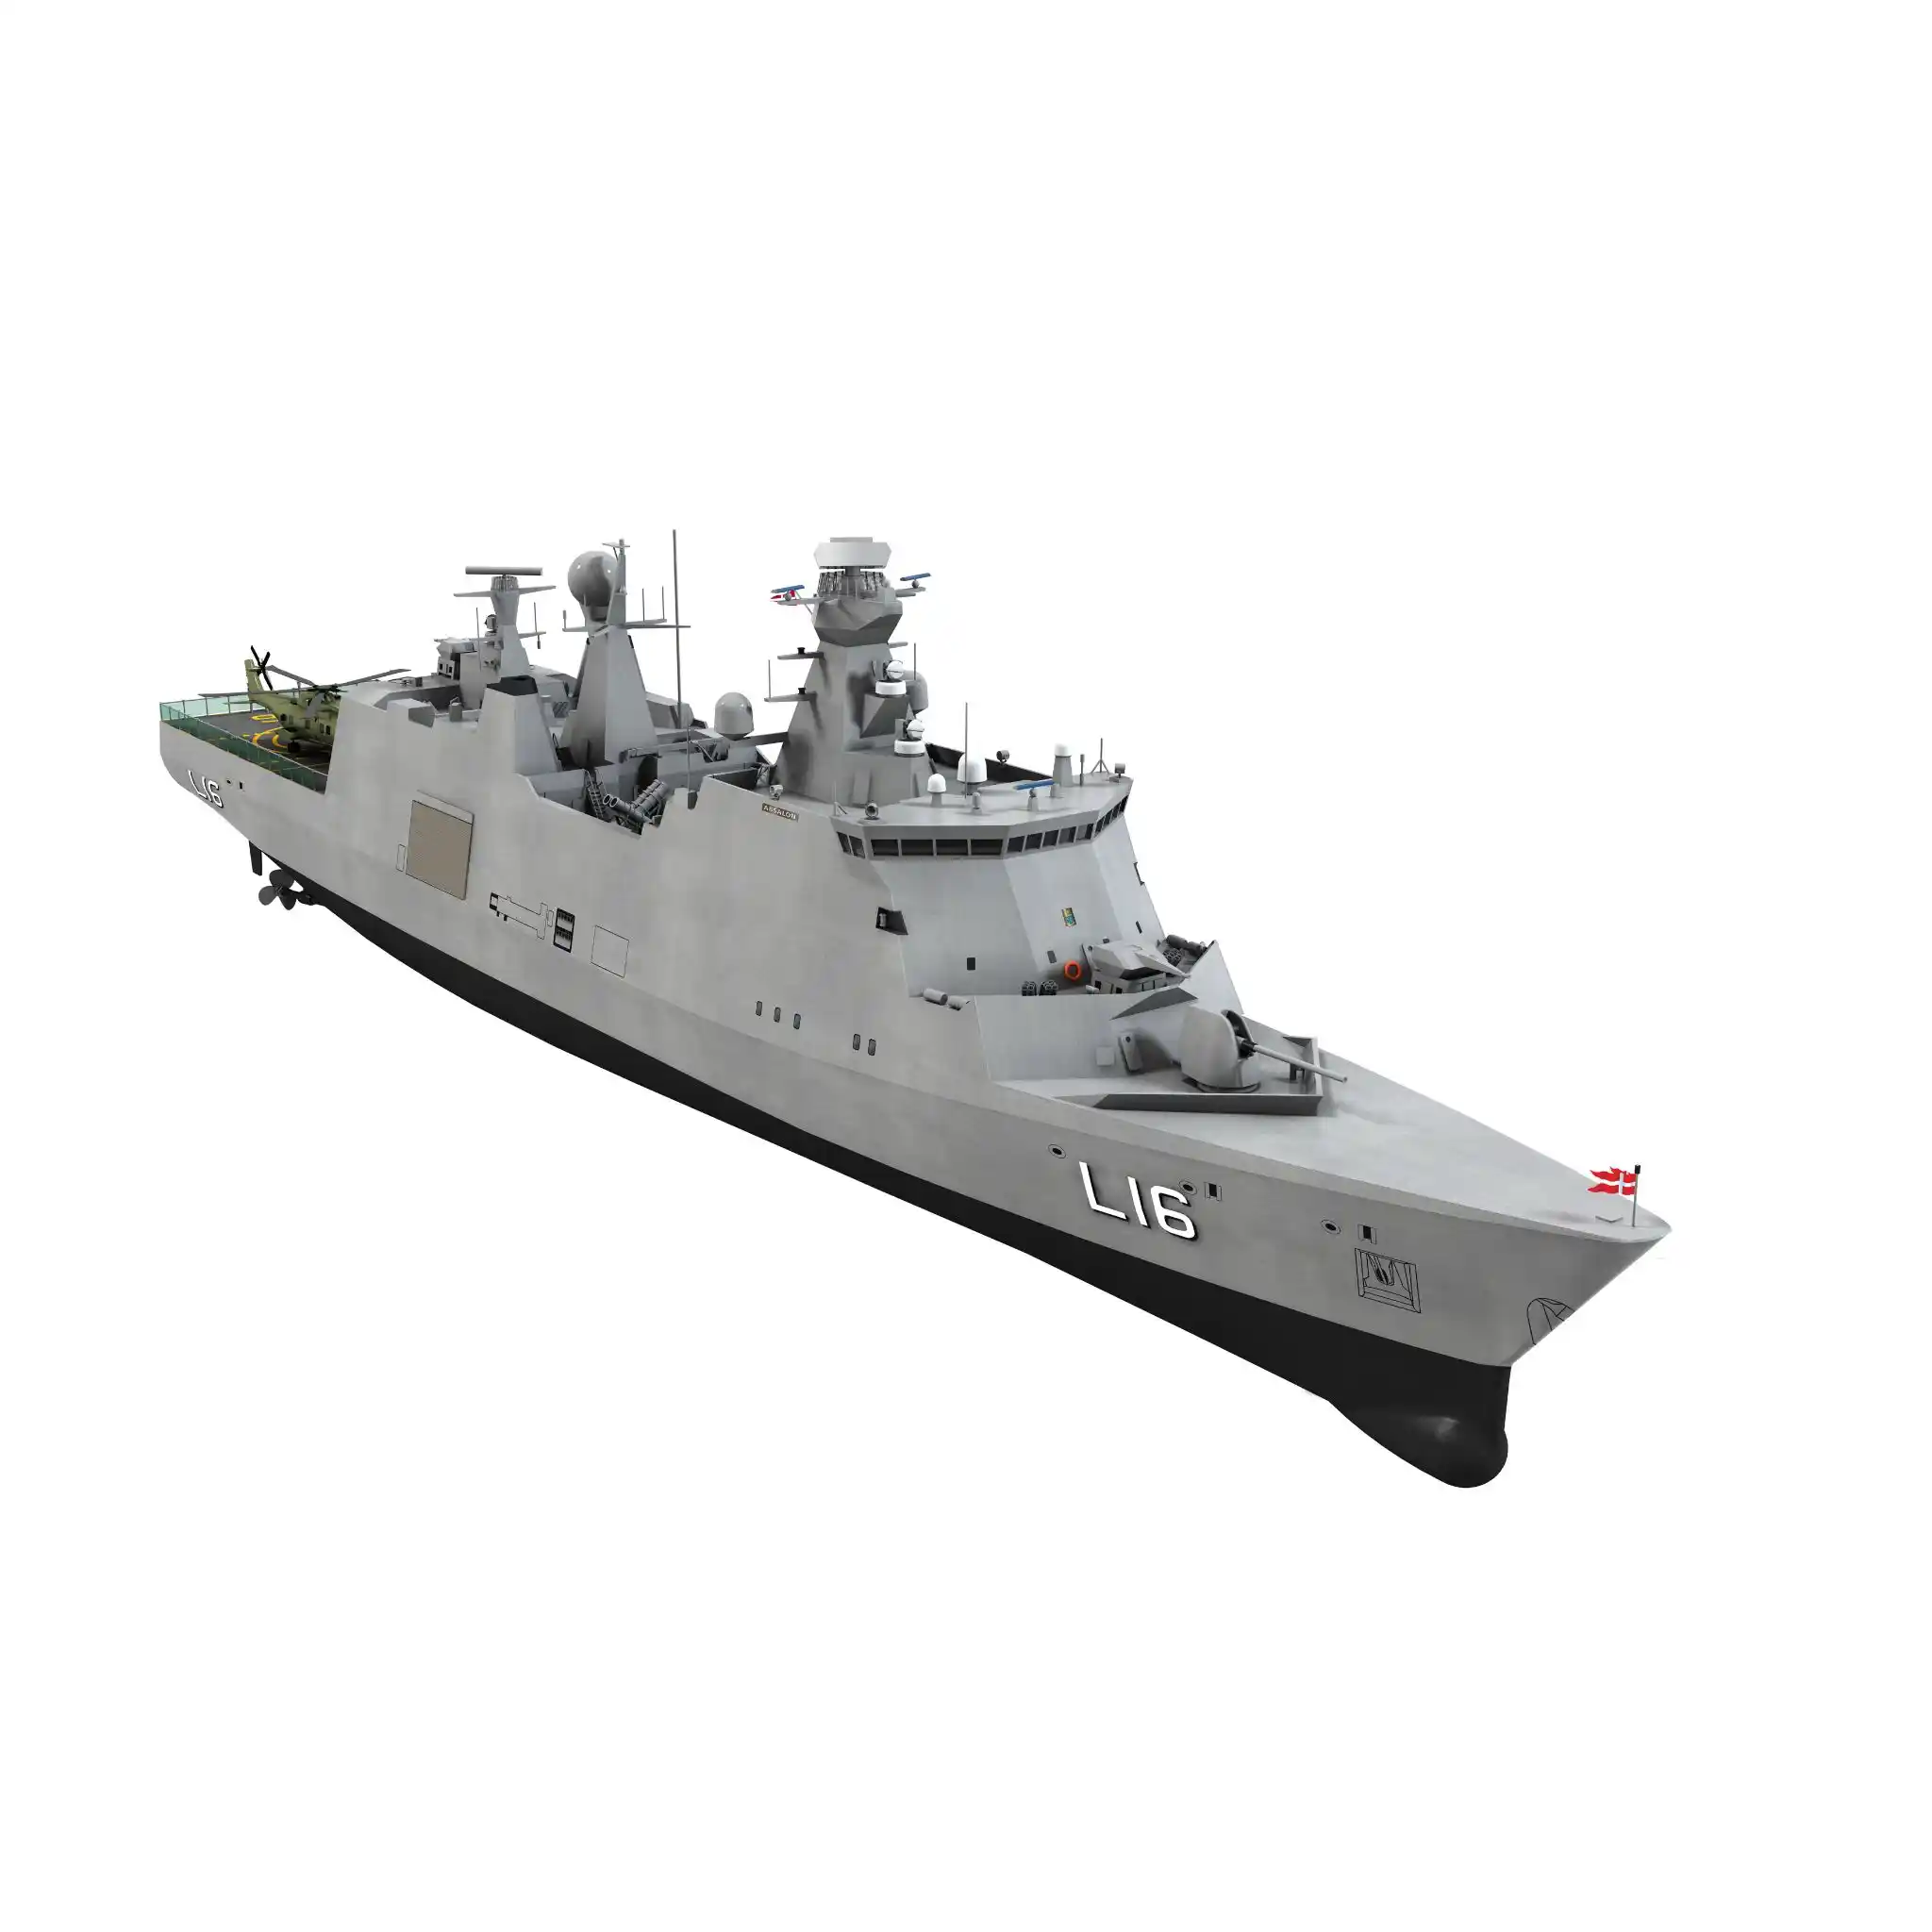 Billing - 1/15 White Star Model Boat Kit (R/C Capable) - RCNZ